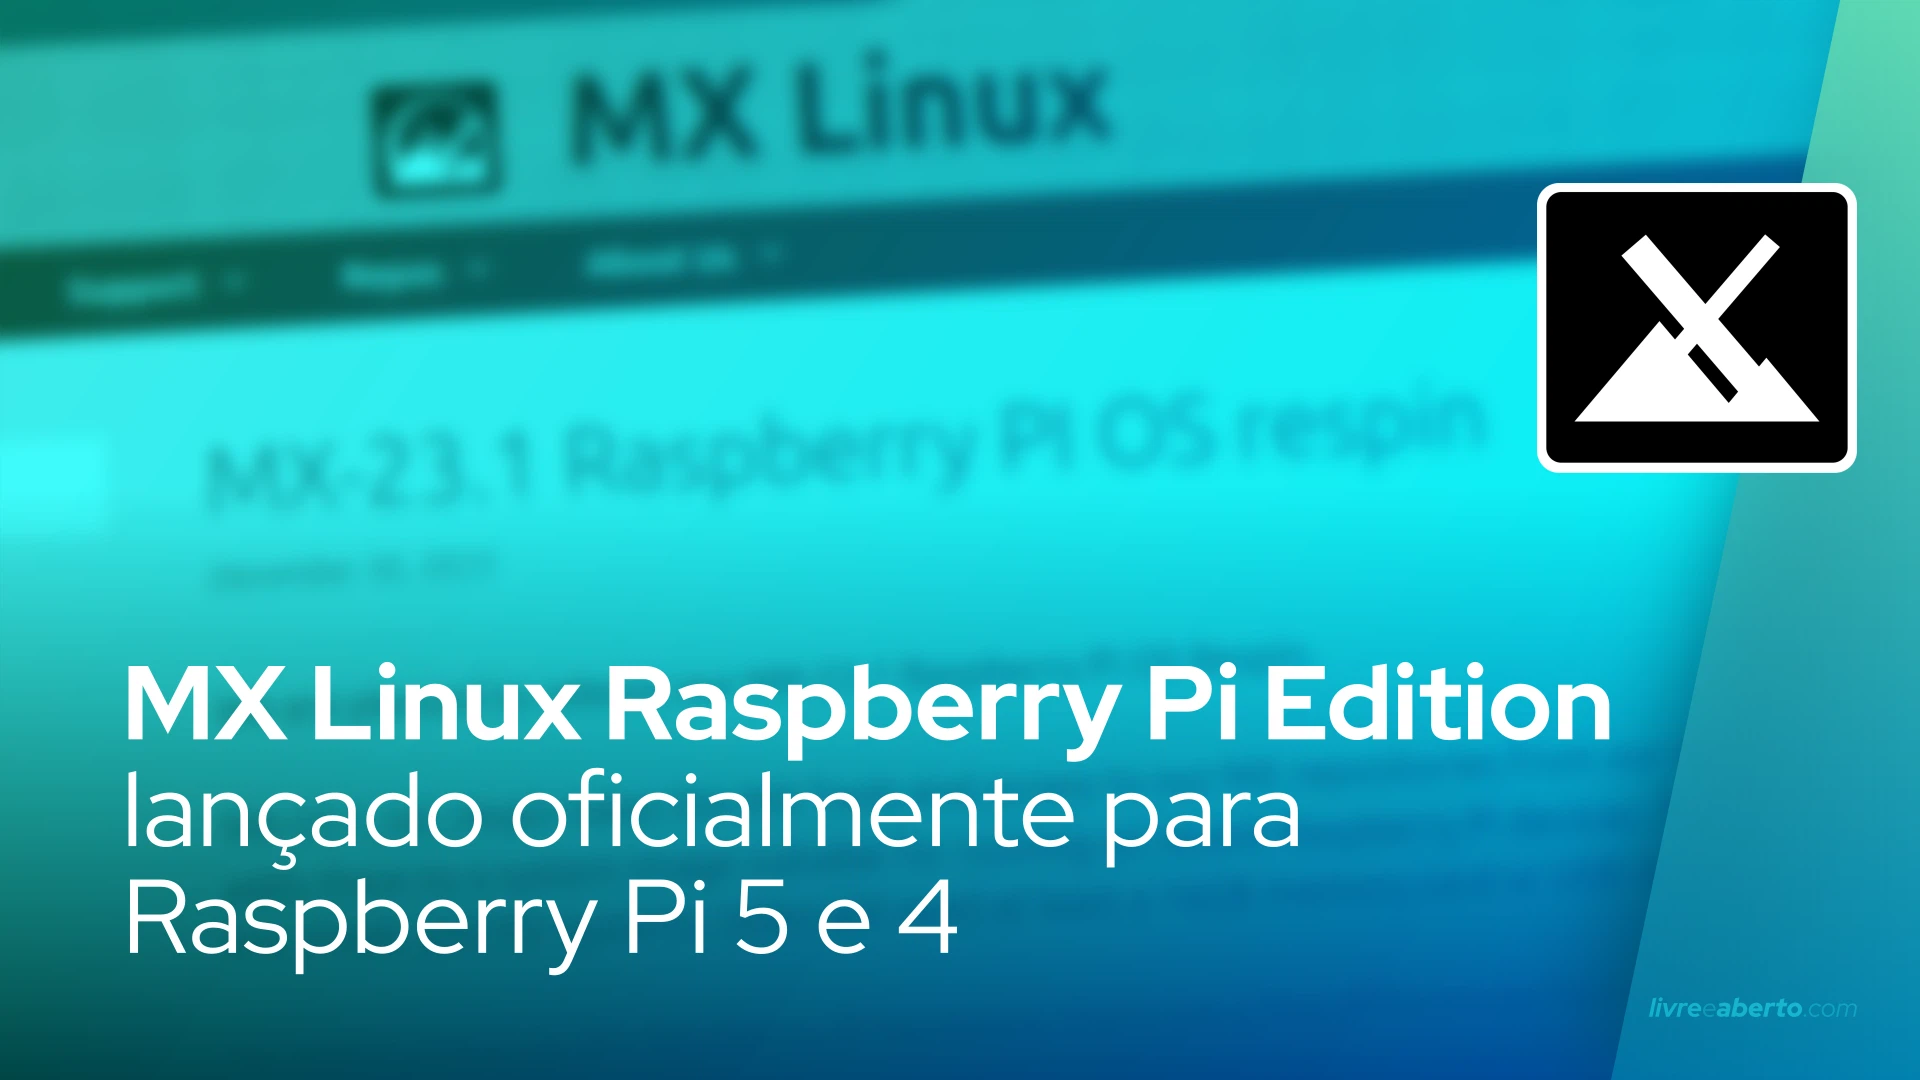 MX Linux Raspberry Pi Edition lançado oficialmente para Raspberry Pi 5 e 4